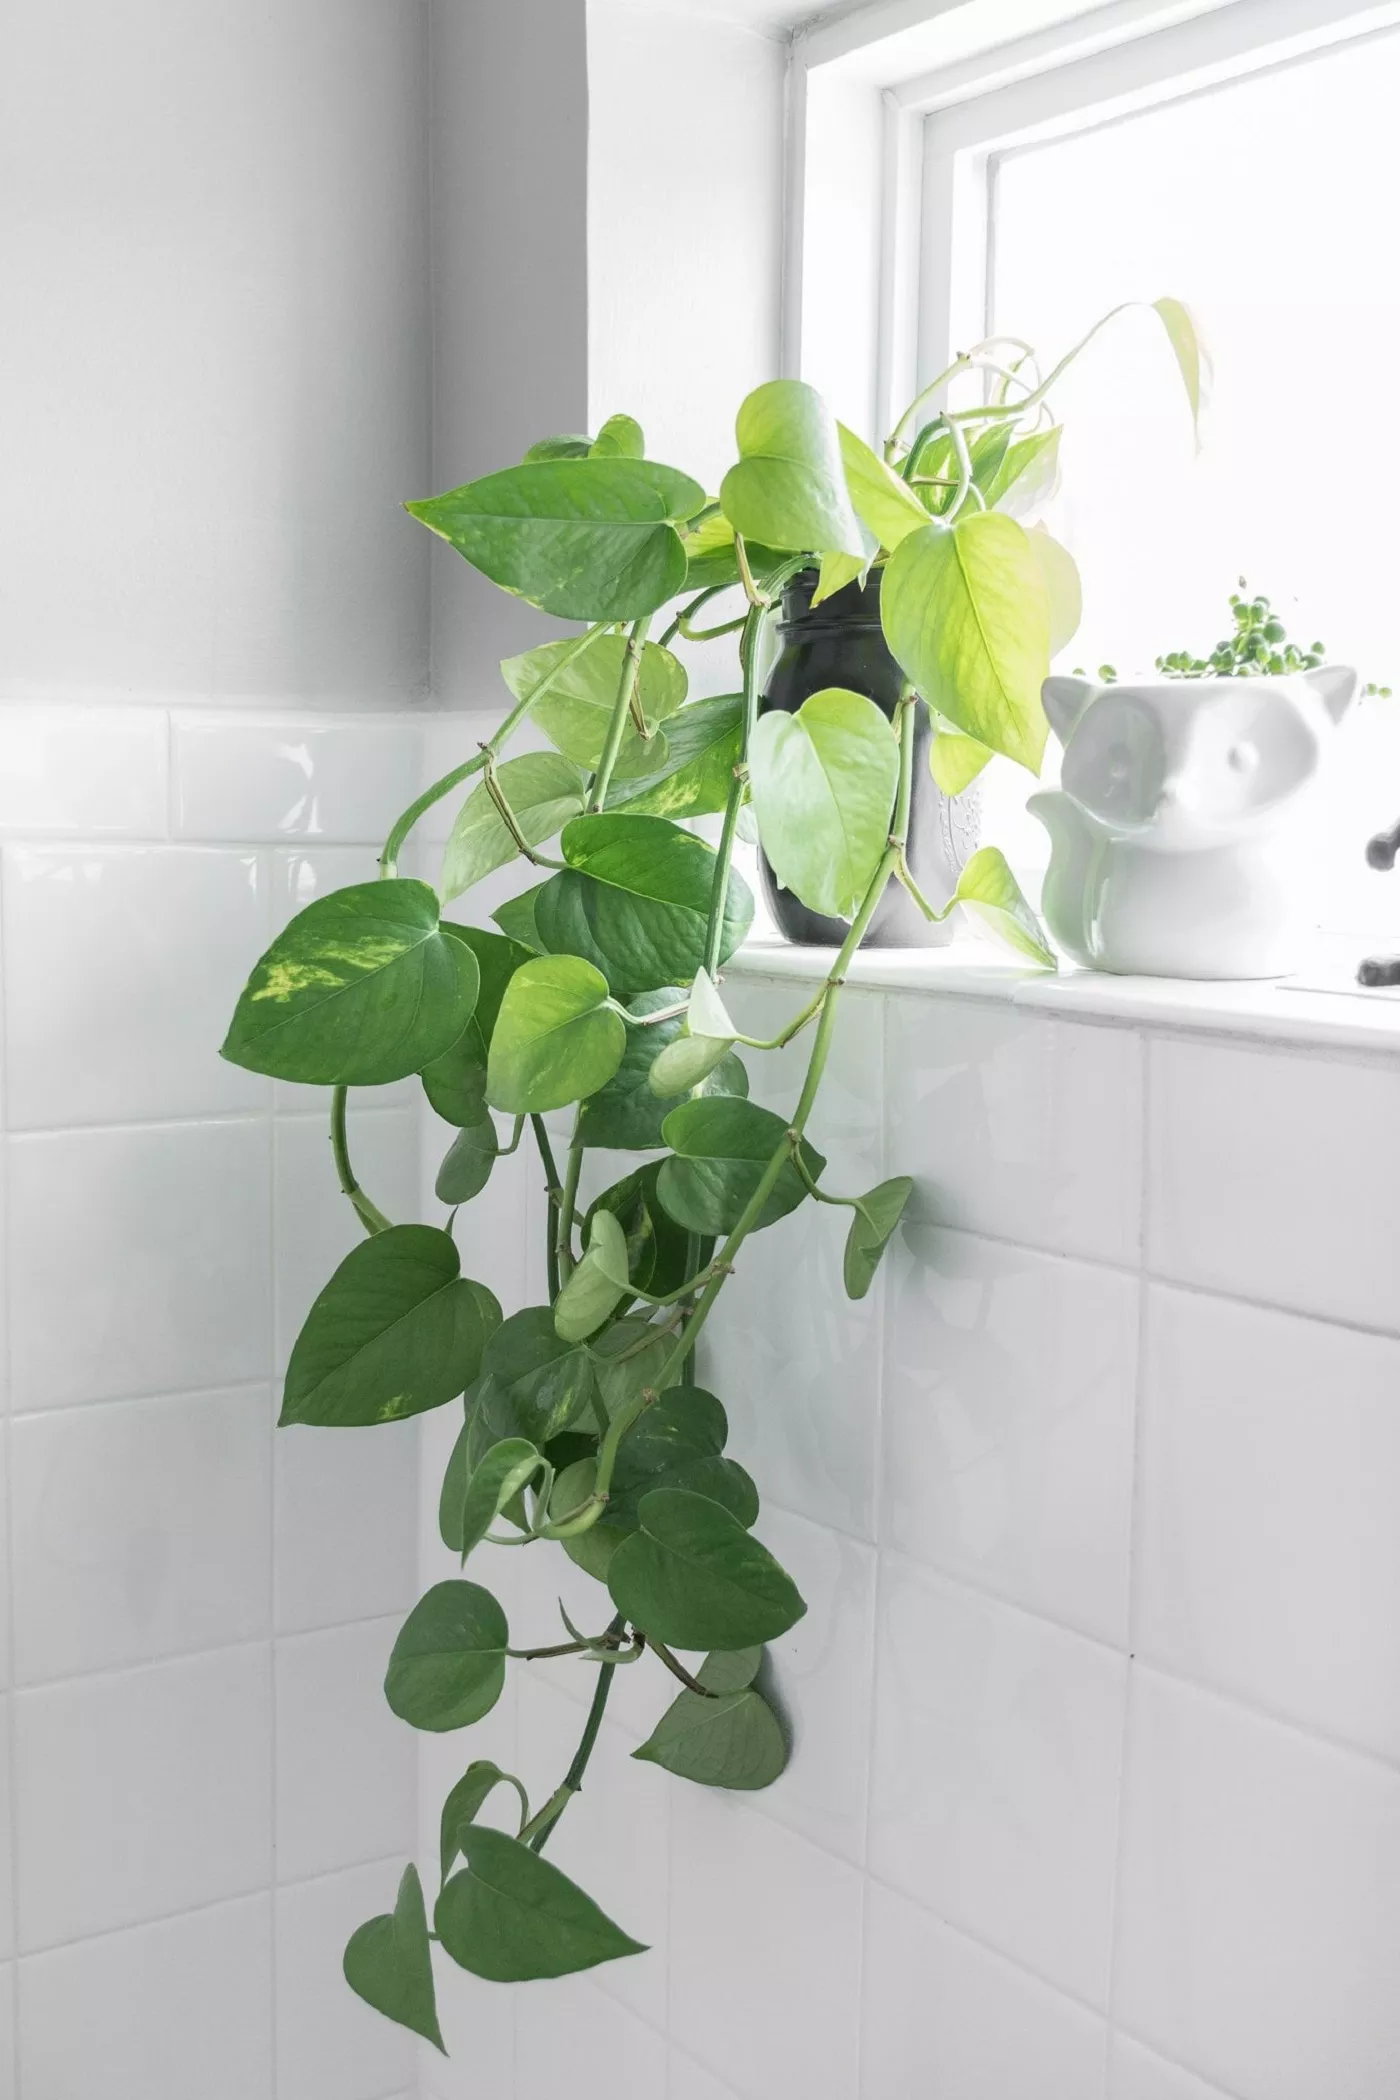 planta jiboia no banheiro